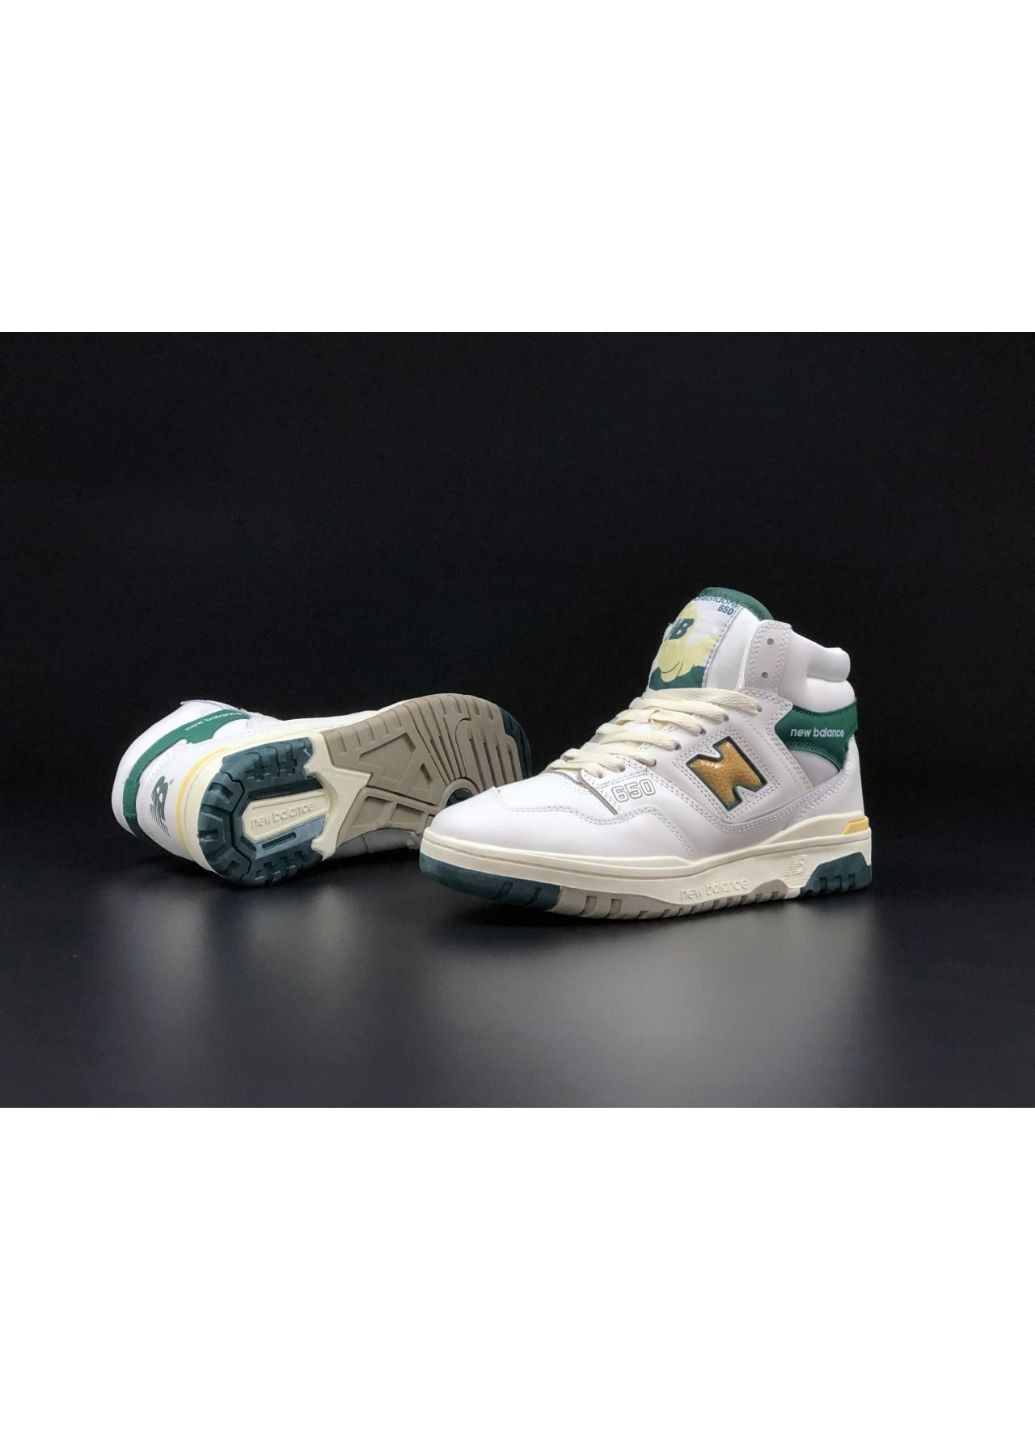 Білі осінні жіночі кросівки білі із зеленим\жовті «no name» New Balance 650